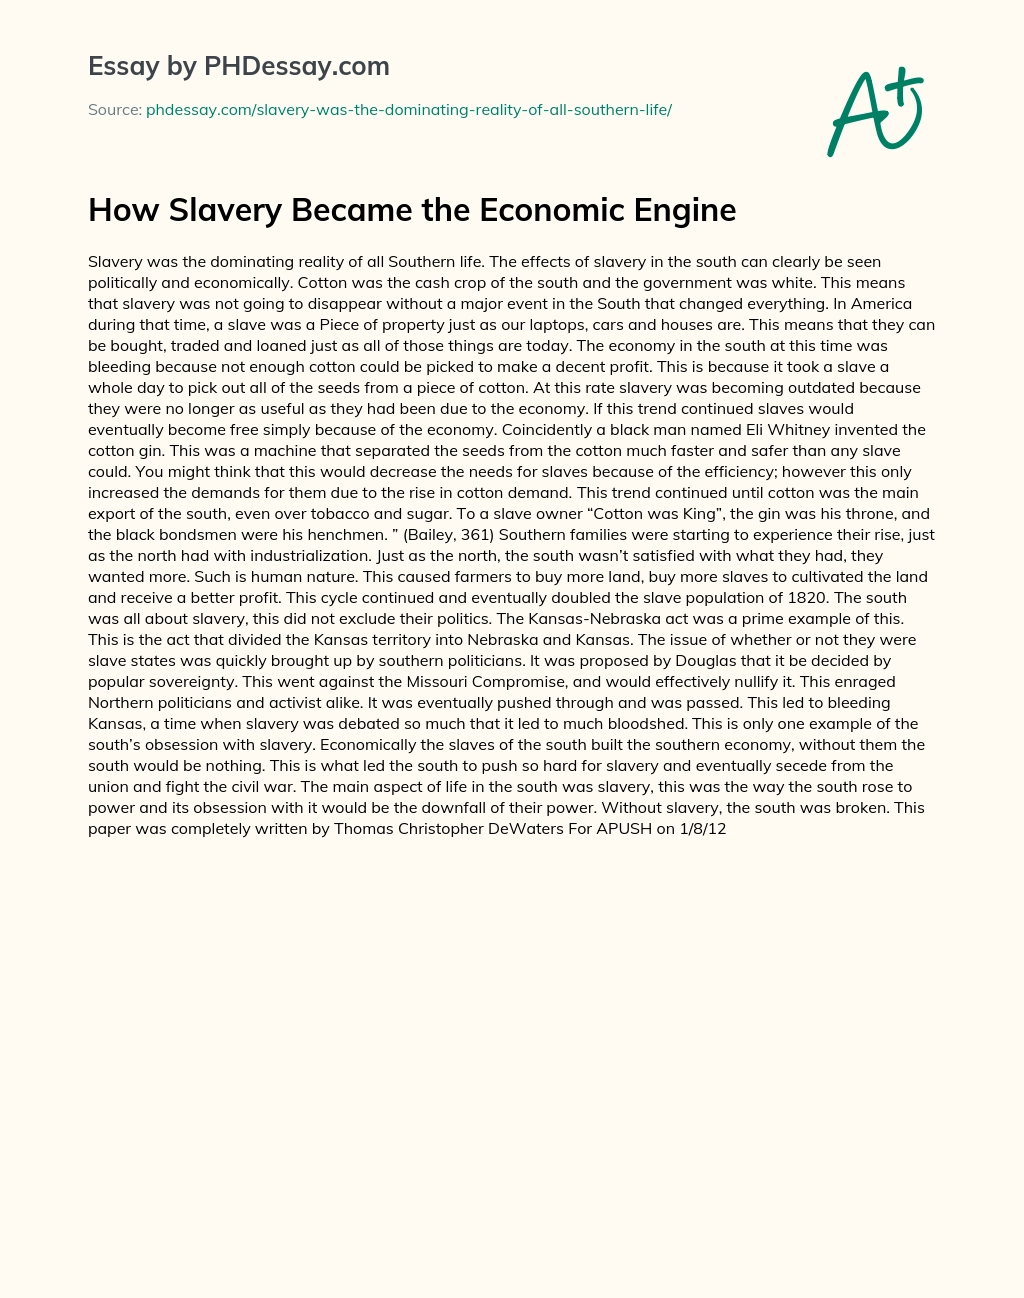 How Slavery Became the Economic Engine essay